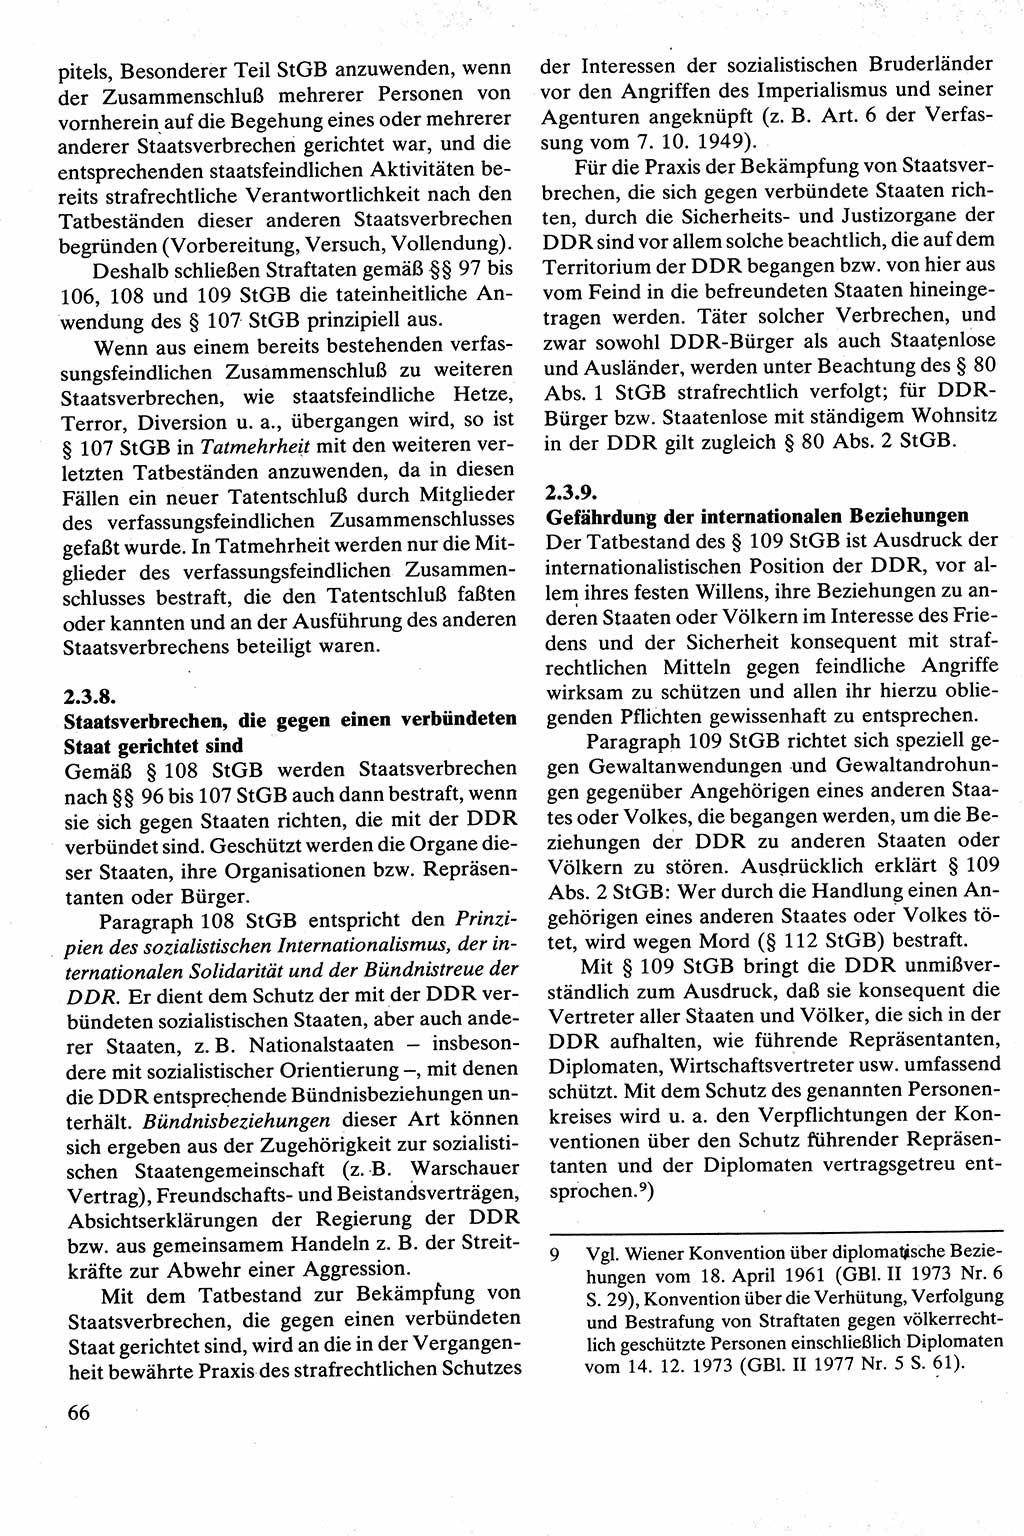 Strafrecht [Deutsche Demokratische Republik (DDR)], Besonderer Teil, Lehrbuch 1981, Seite 66 (Strafr. DDR BT Lb. 1981, S. 66)